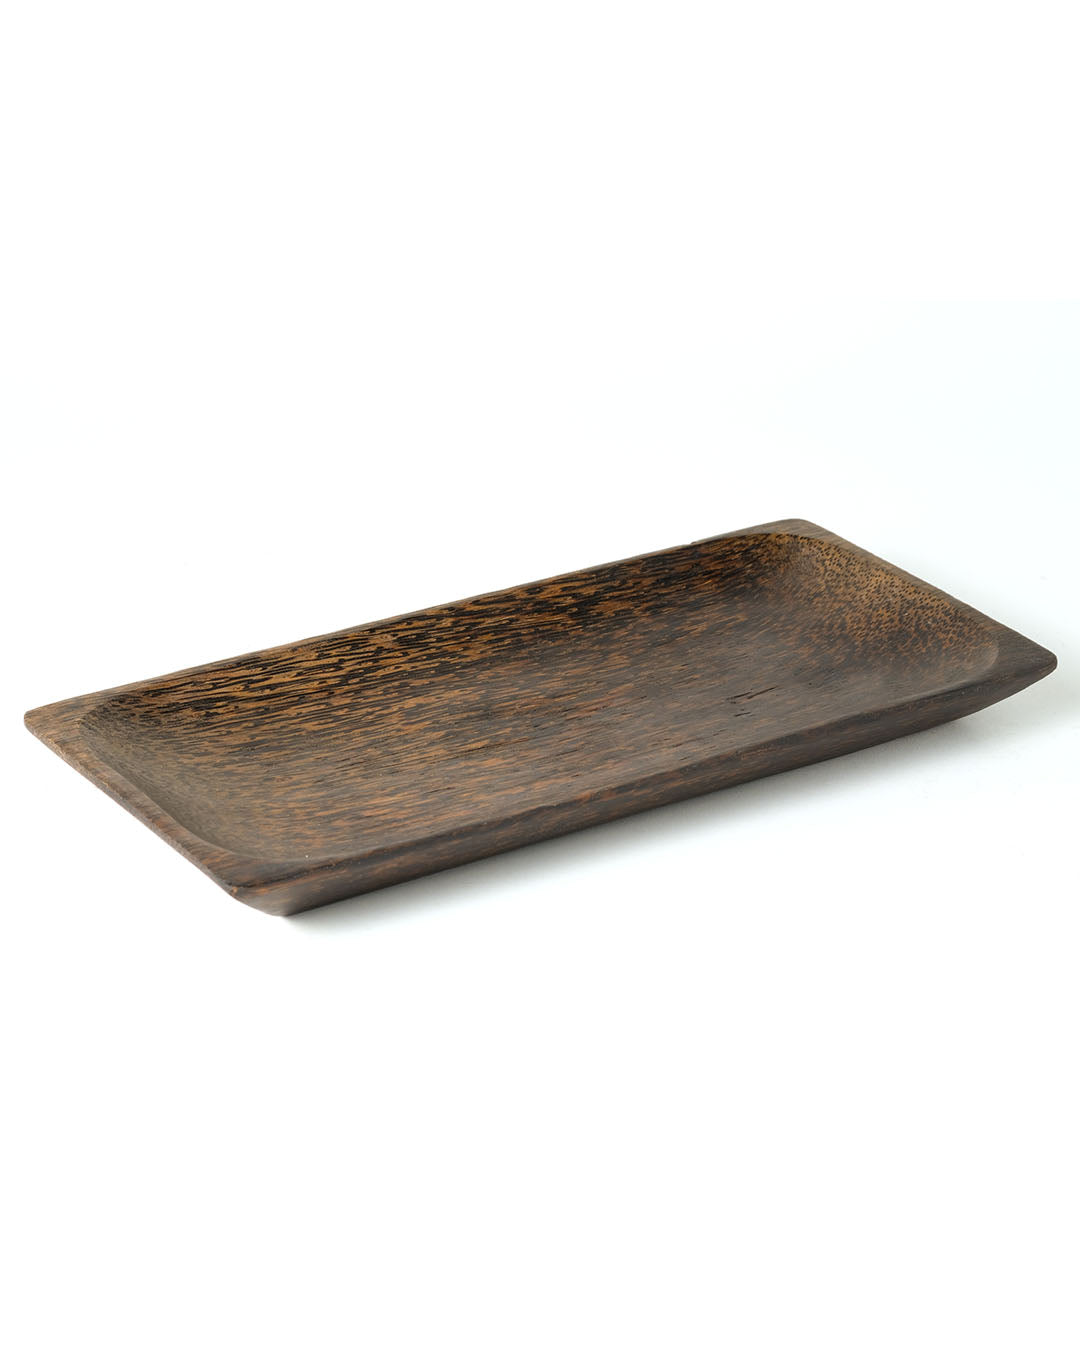 Mataran wooden plate